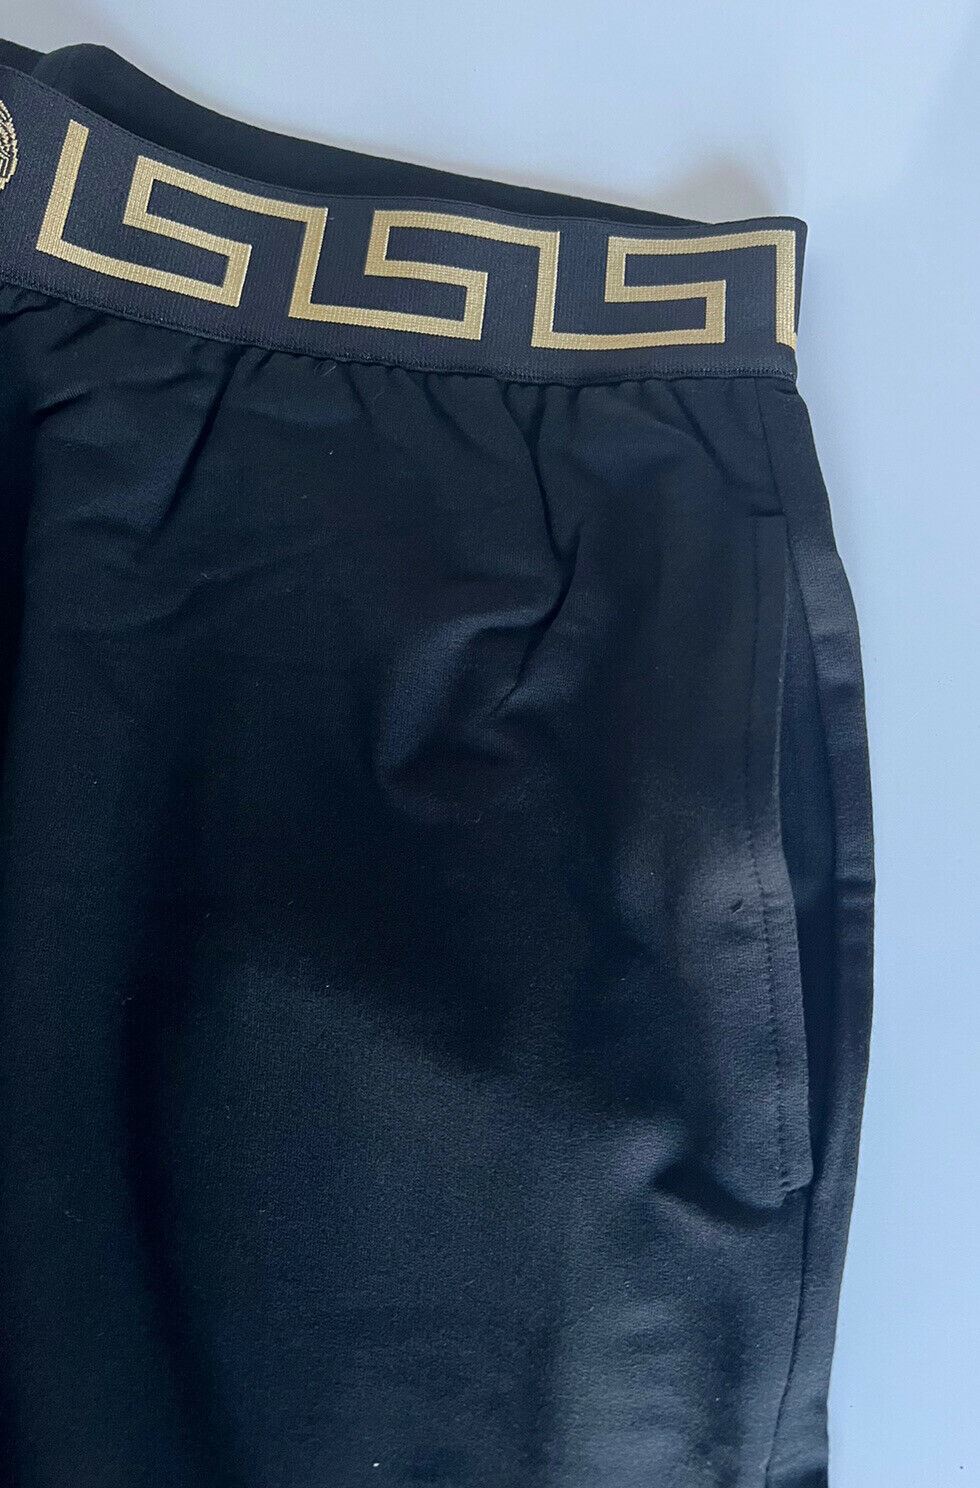 Neu mit Etikett: Schwarze Herren-Trainingshose mit Medusa und Greca-Bordüre von Versace, Größe 7 (XL), Italien 15011 